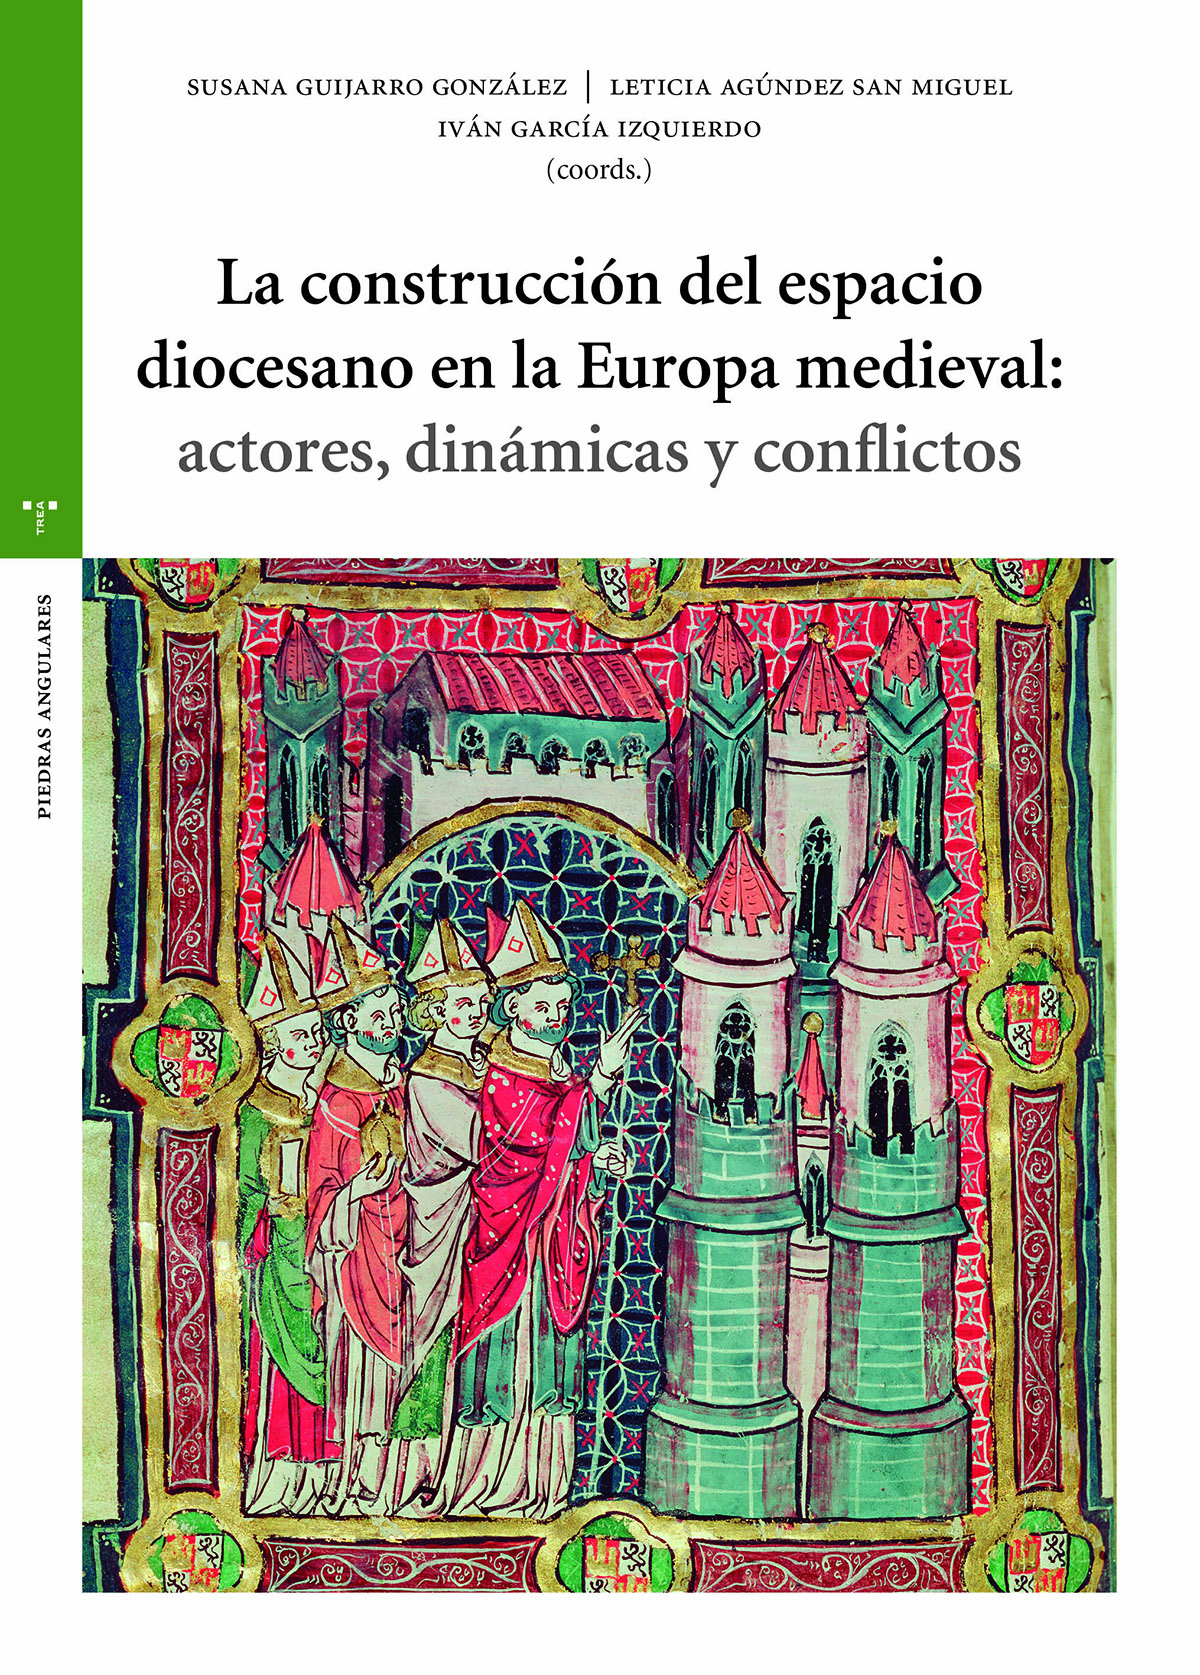 La construcción del espacio diocesano en la Europa medieval